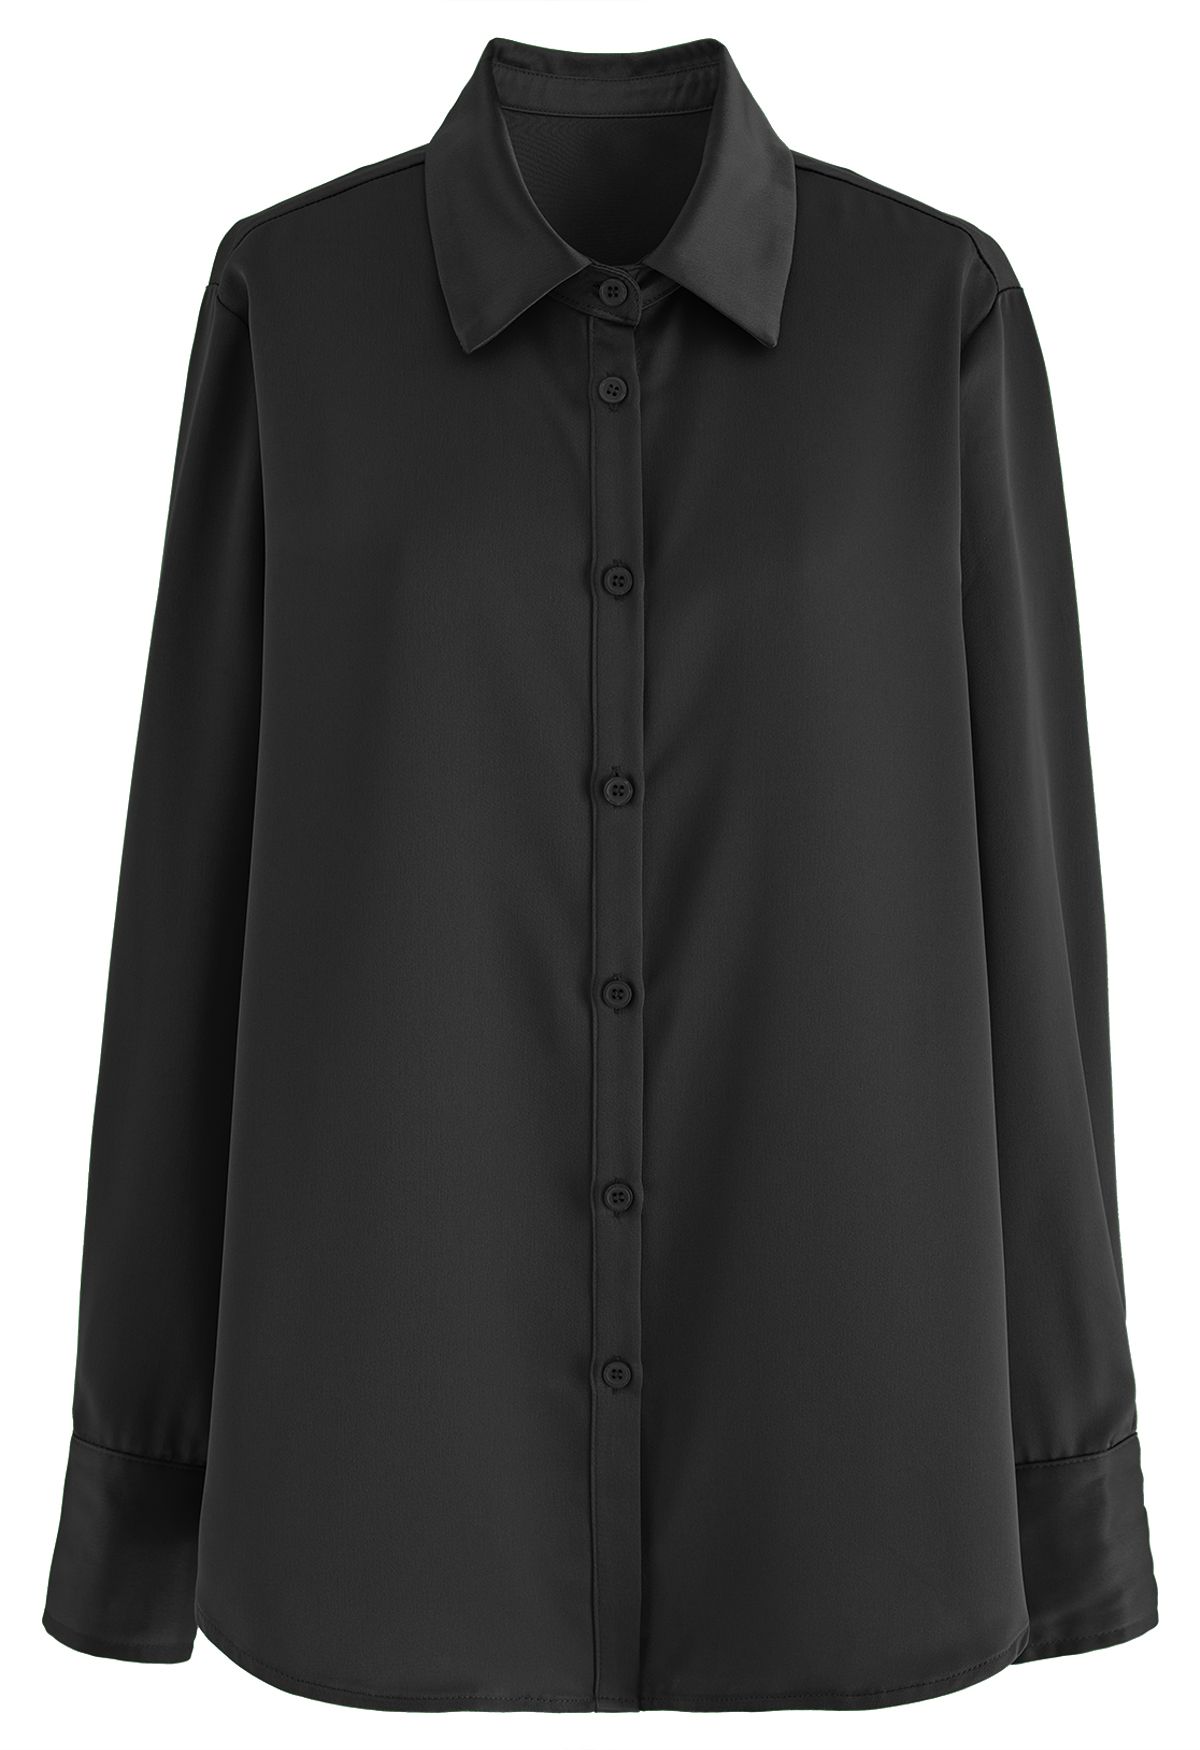 Camisa abotoada com acabamento acetinado em preto